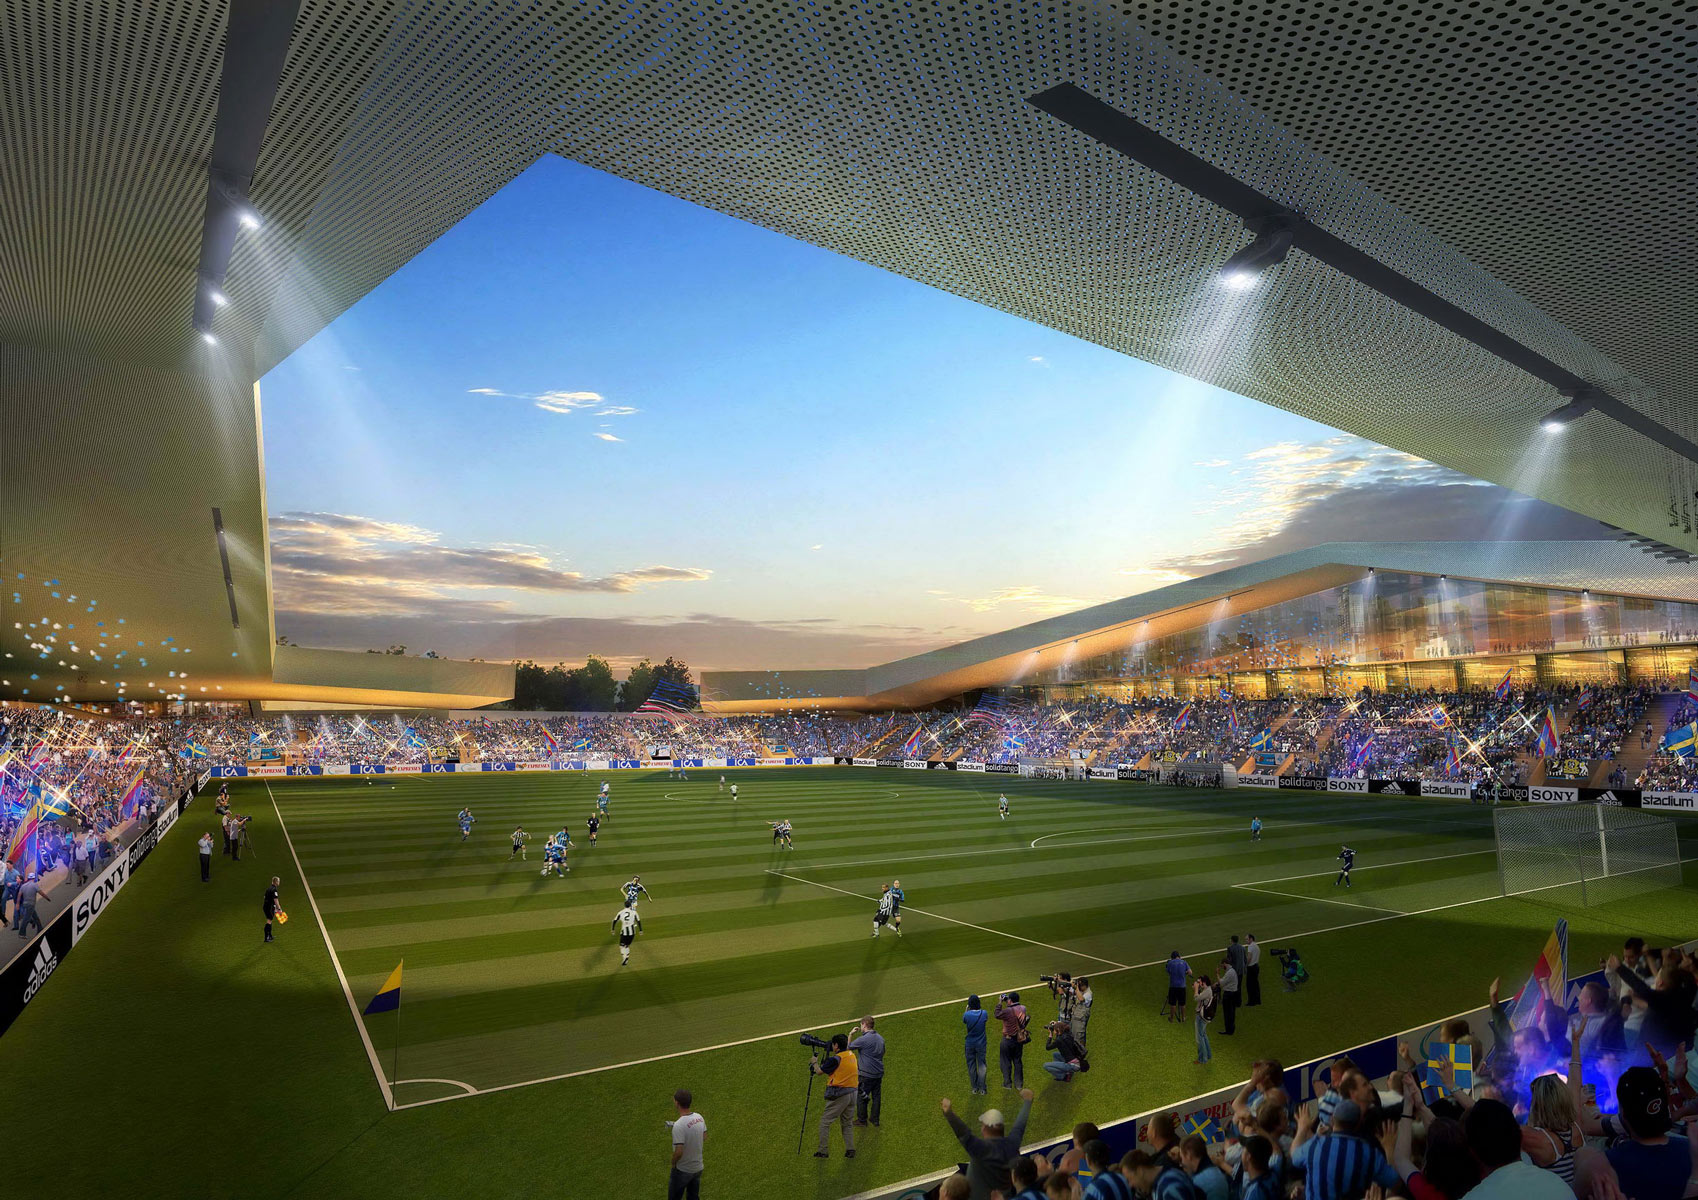 Stadium stadium rendering